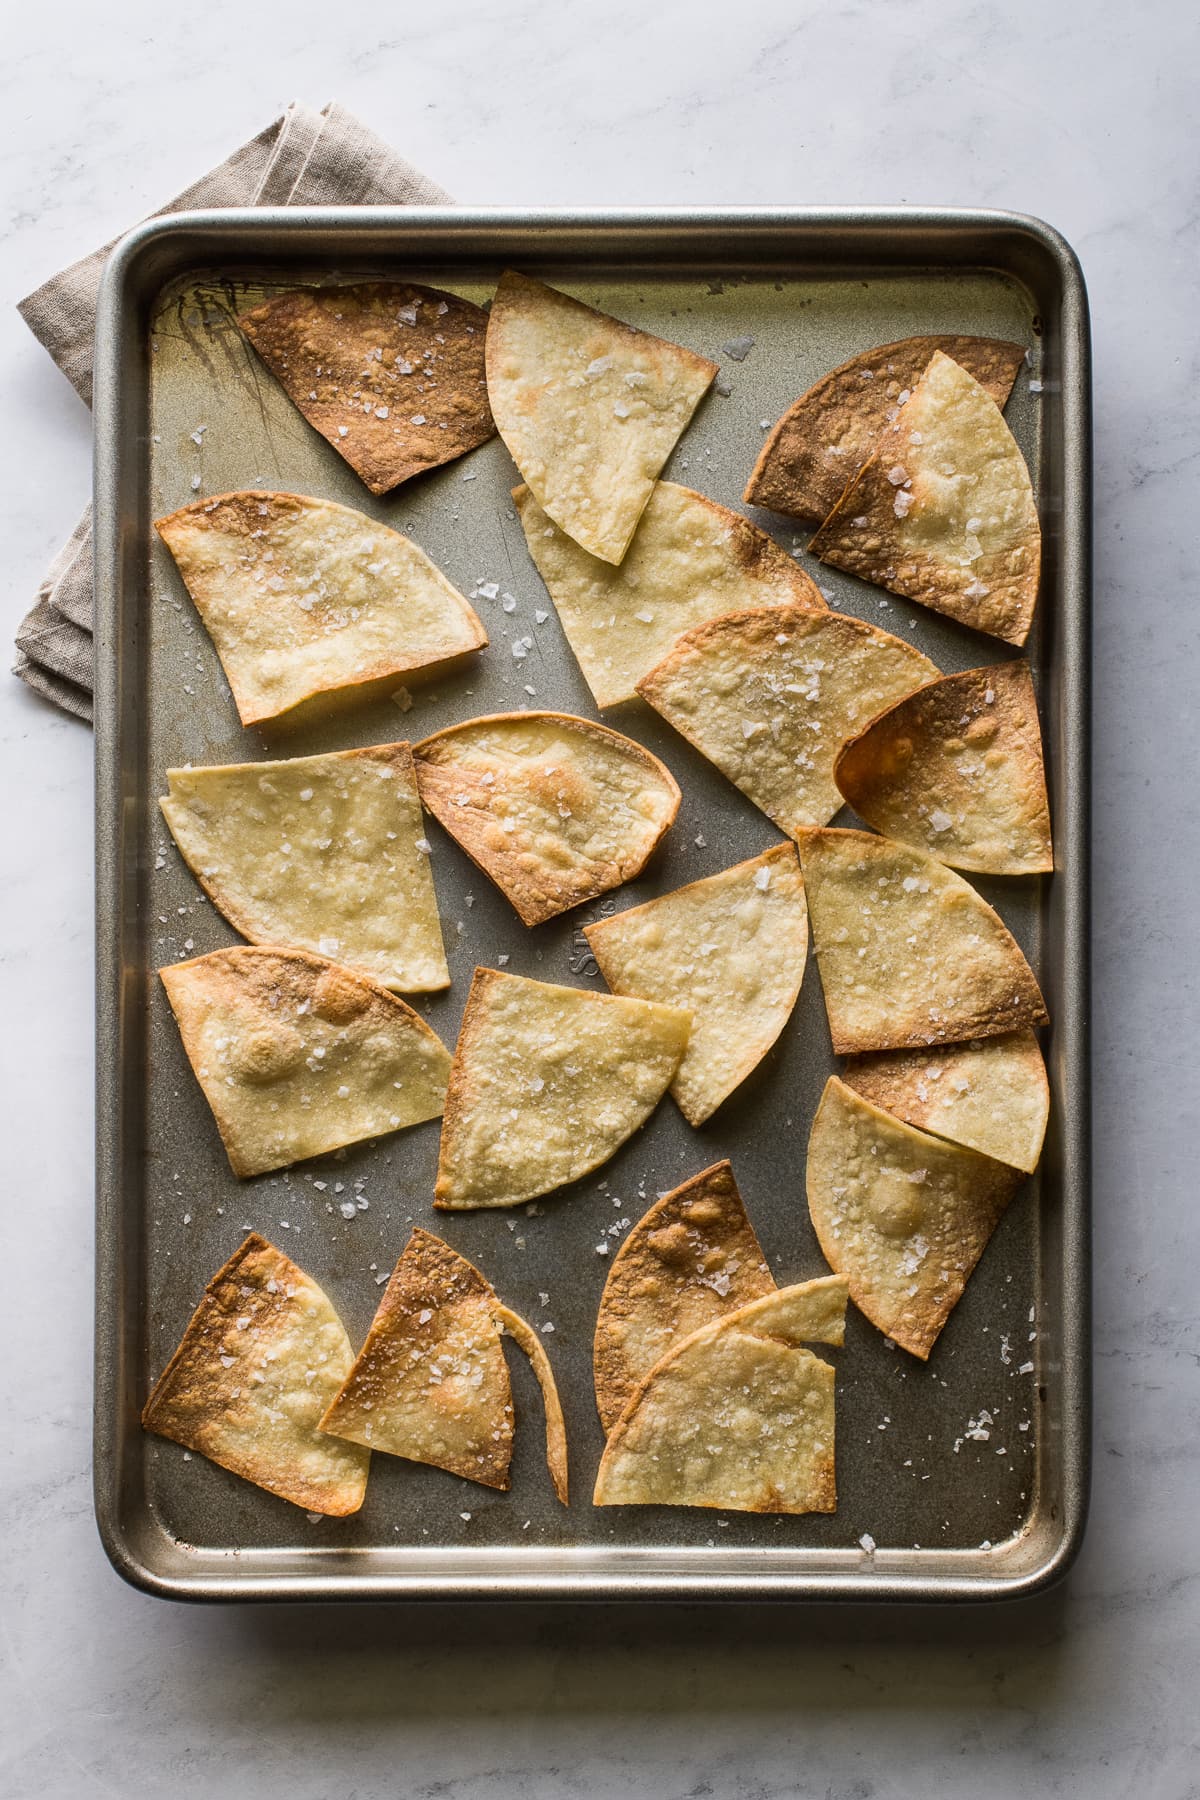 Air fried tortilla chips on a baking sheet seasoned with salt.